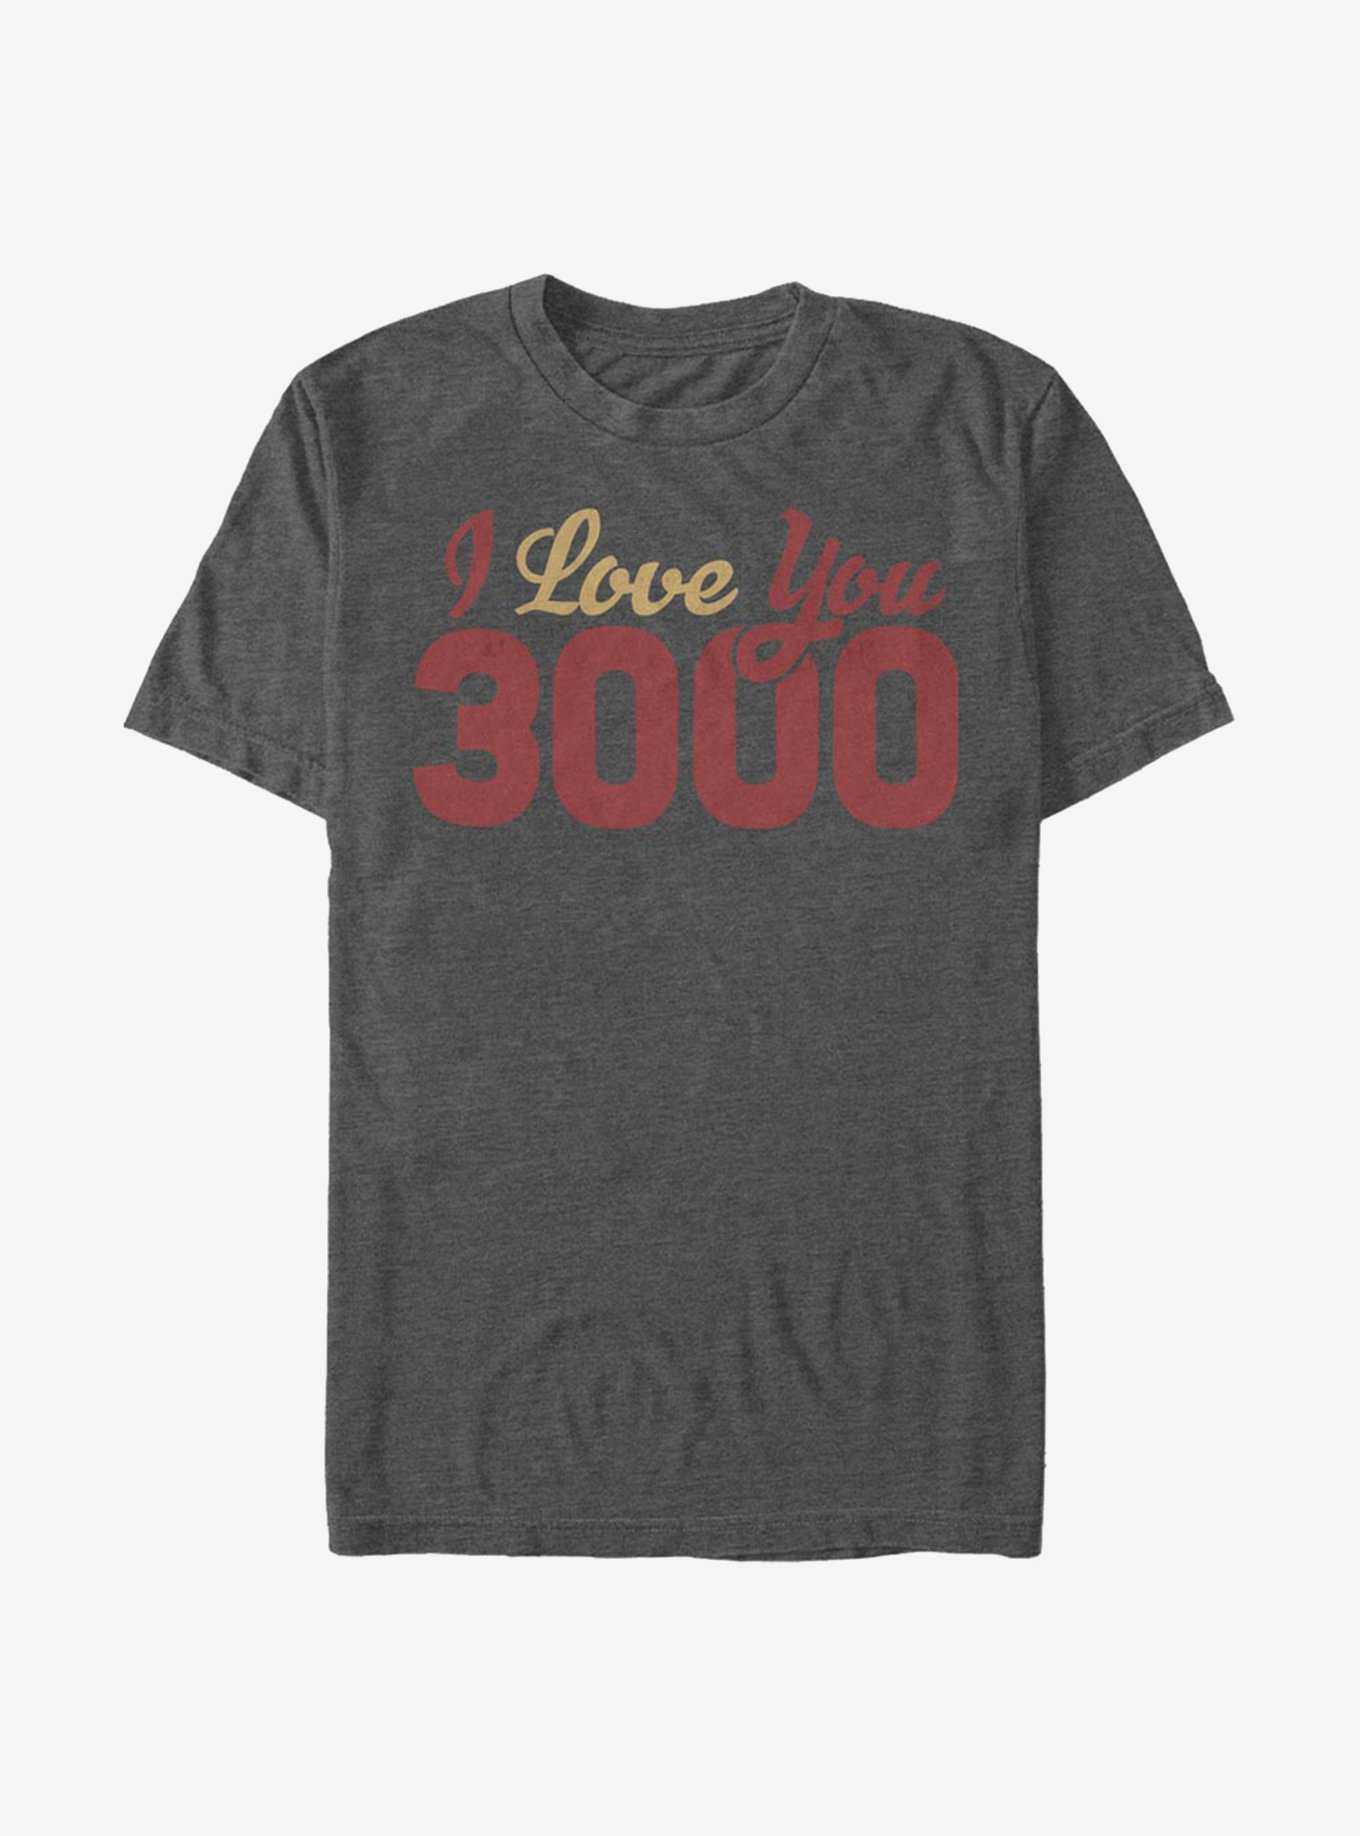 Marvel Avengers I Love You 3000 Loves T-Shirt, , hi-res